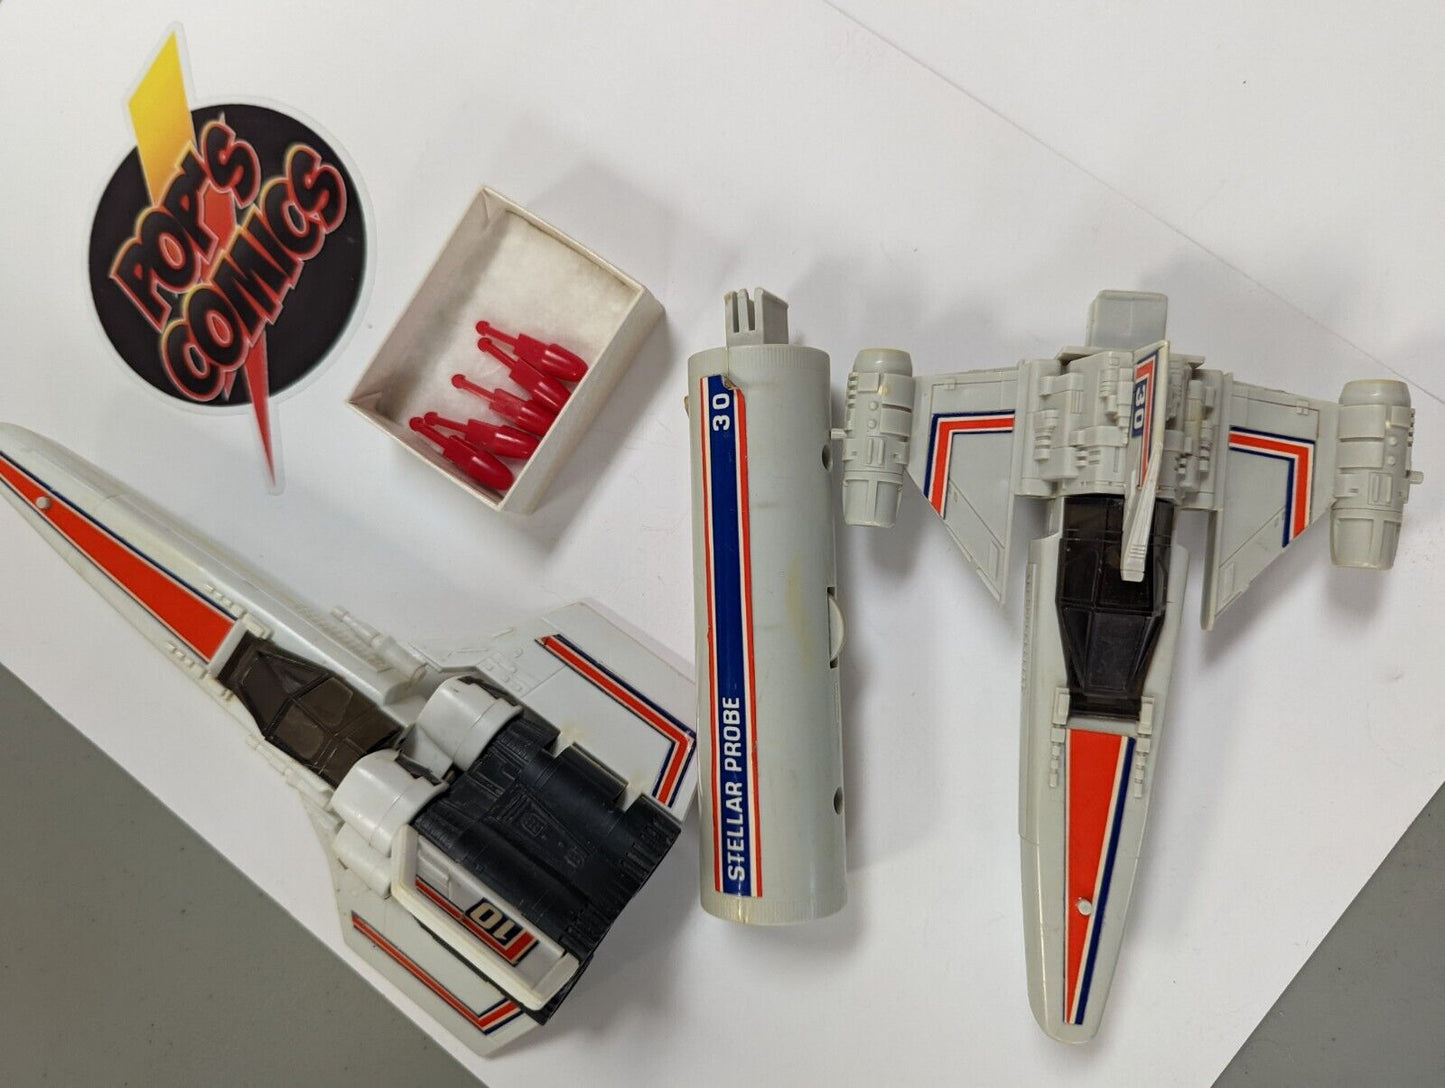 Mattel 1978 Battlestar Galactica Stellar Probe Colonial Viper Firing Missiles